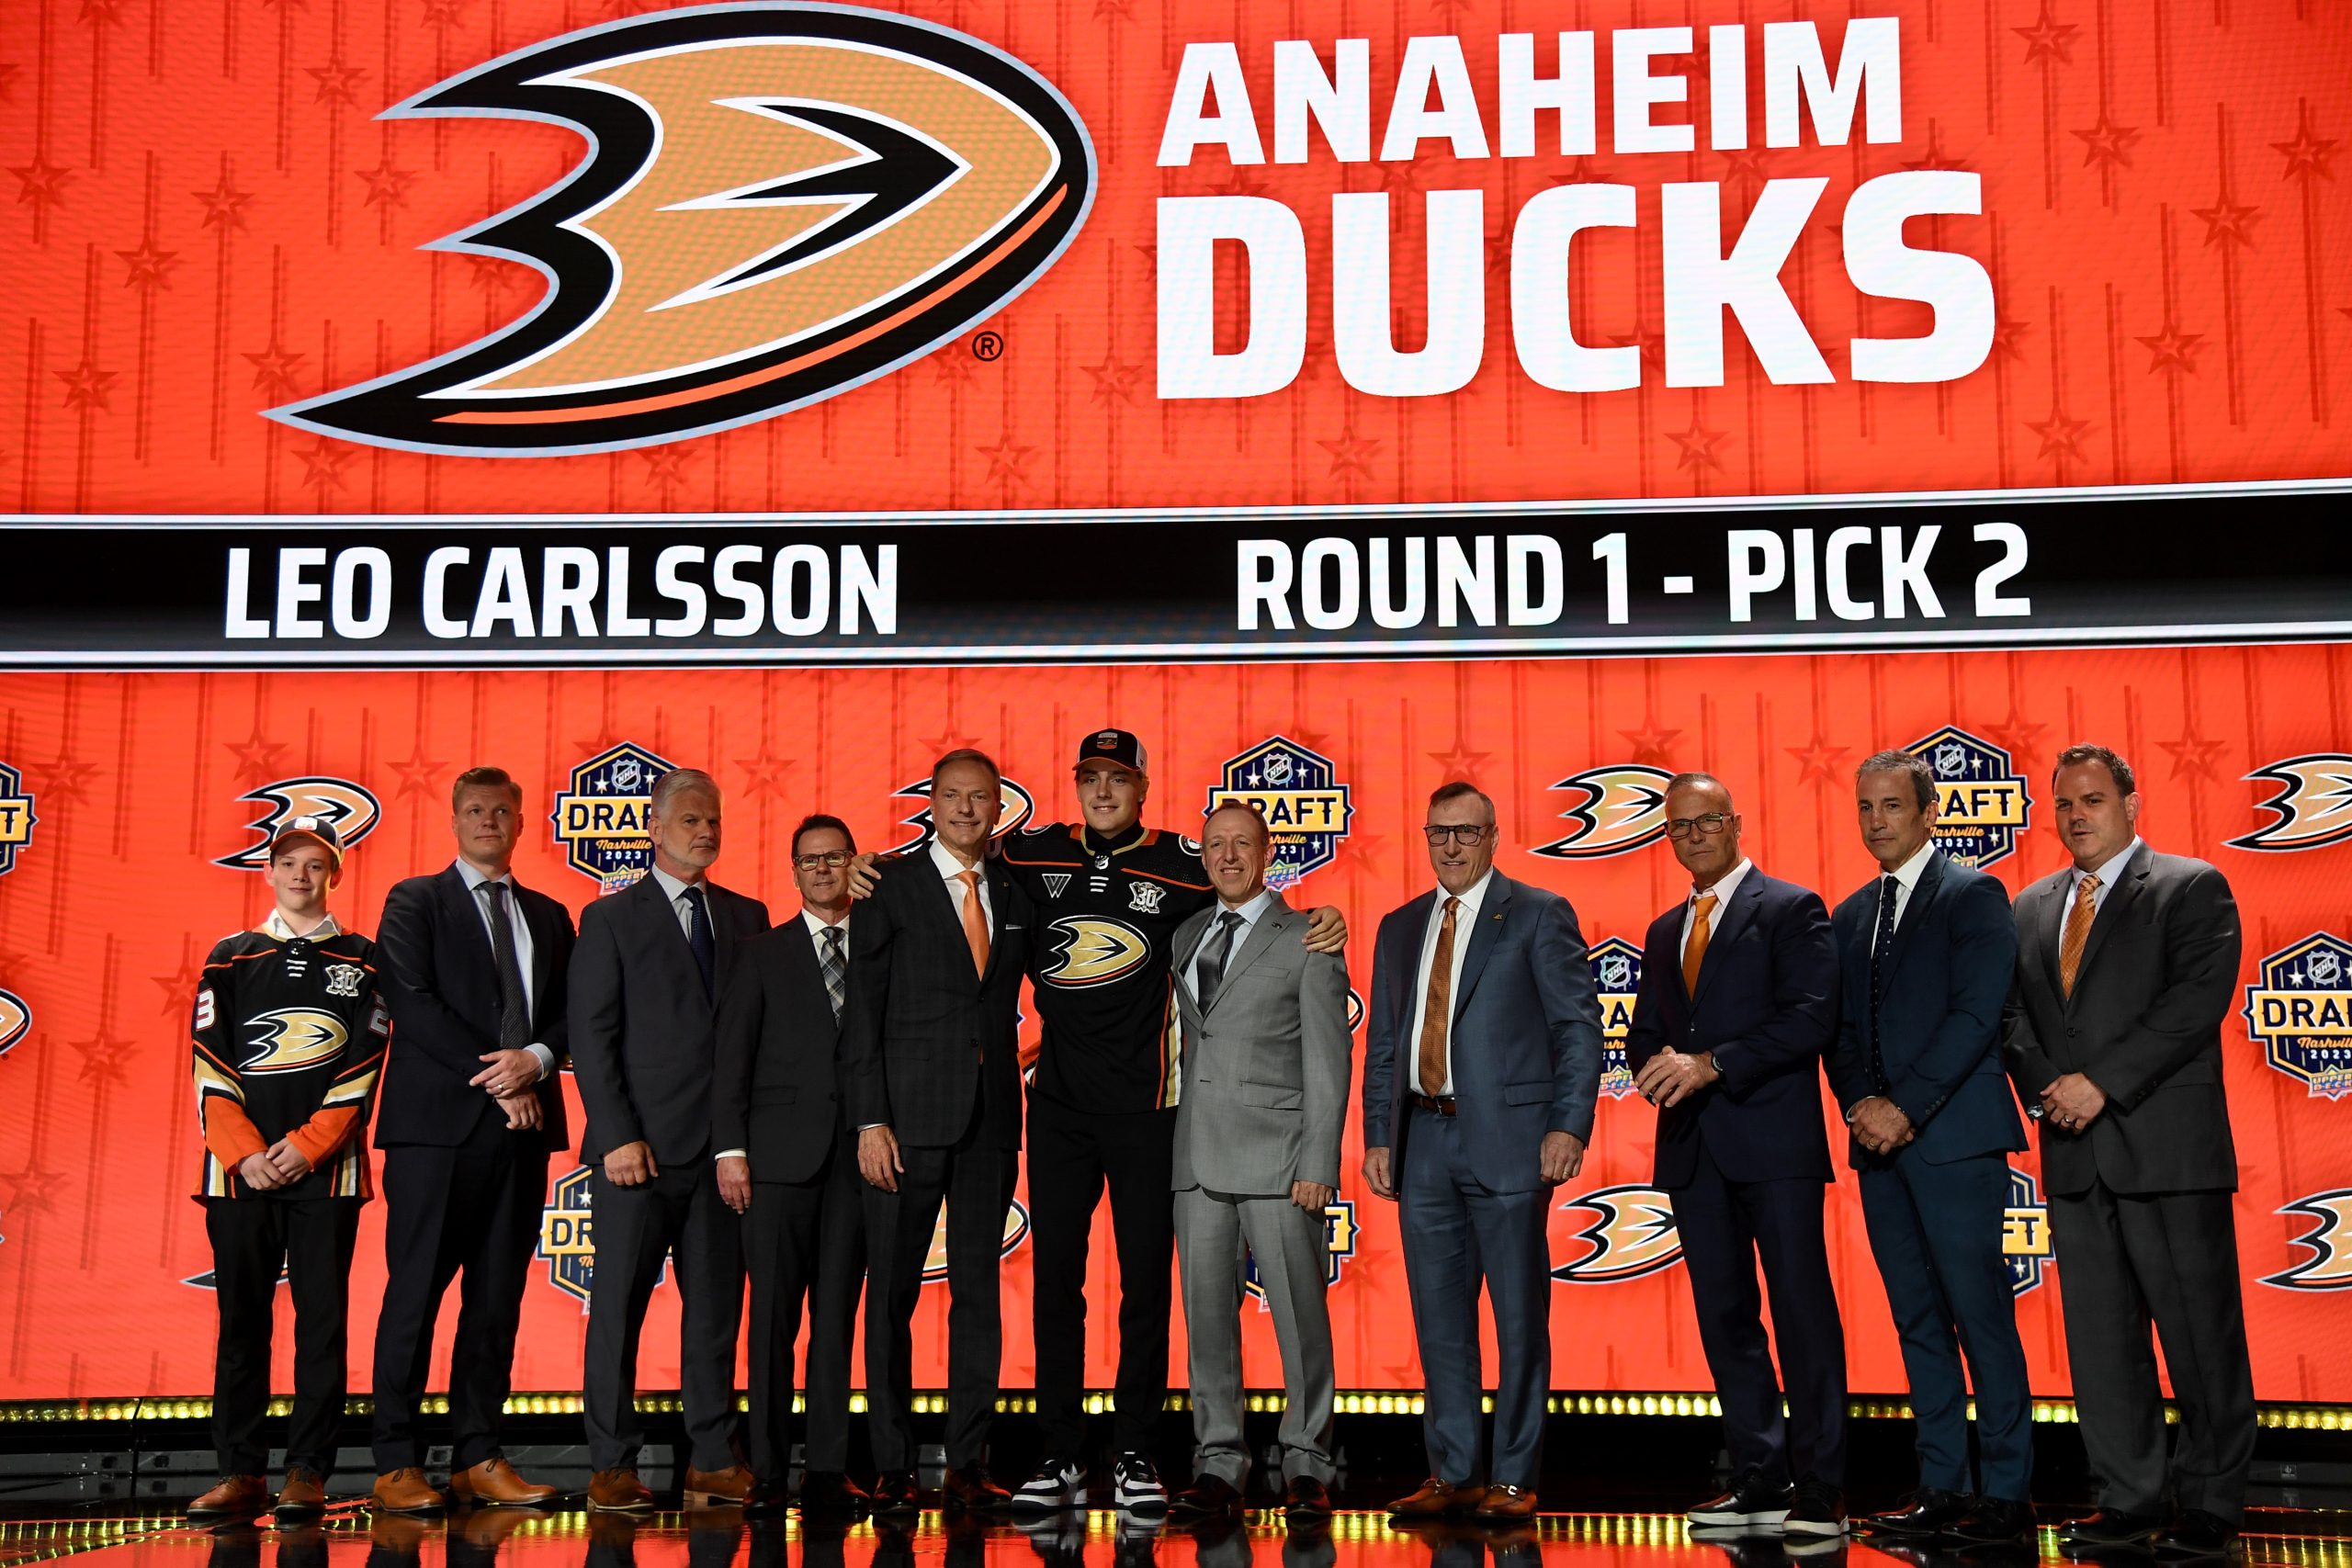 Anaheim Ducks prospects